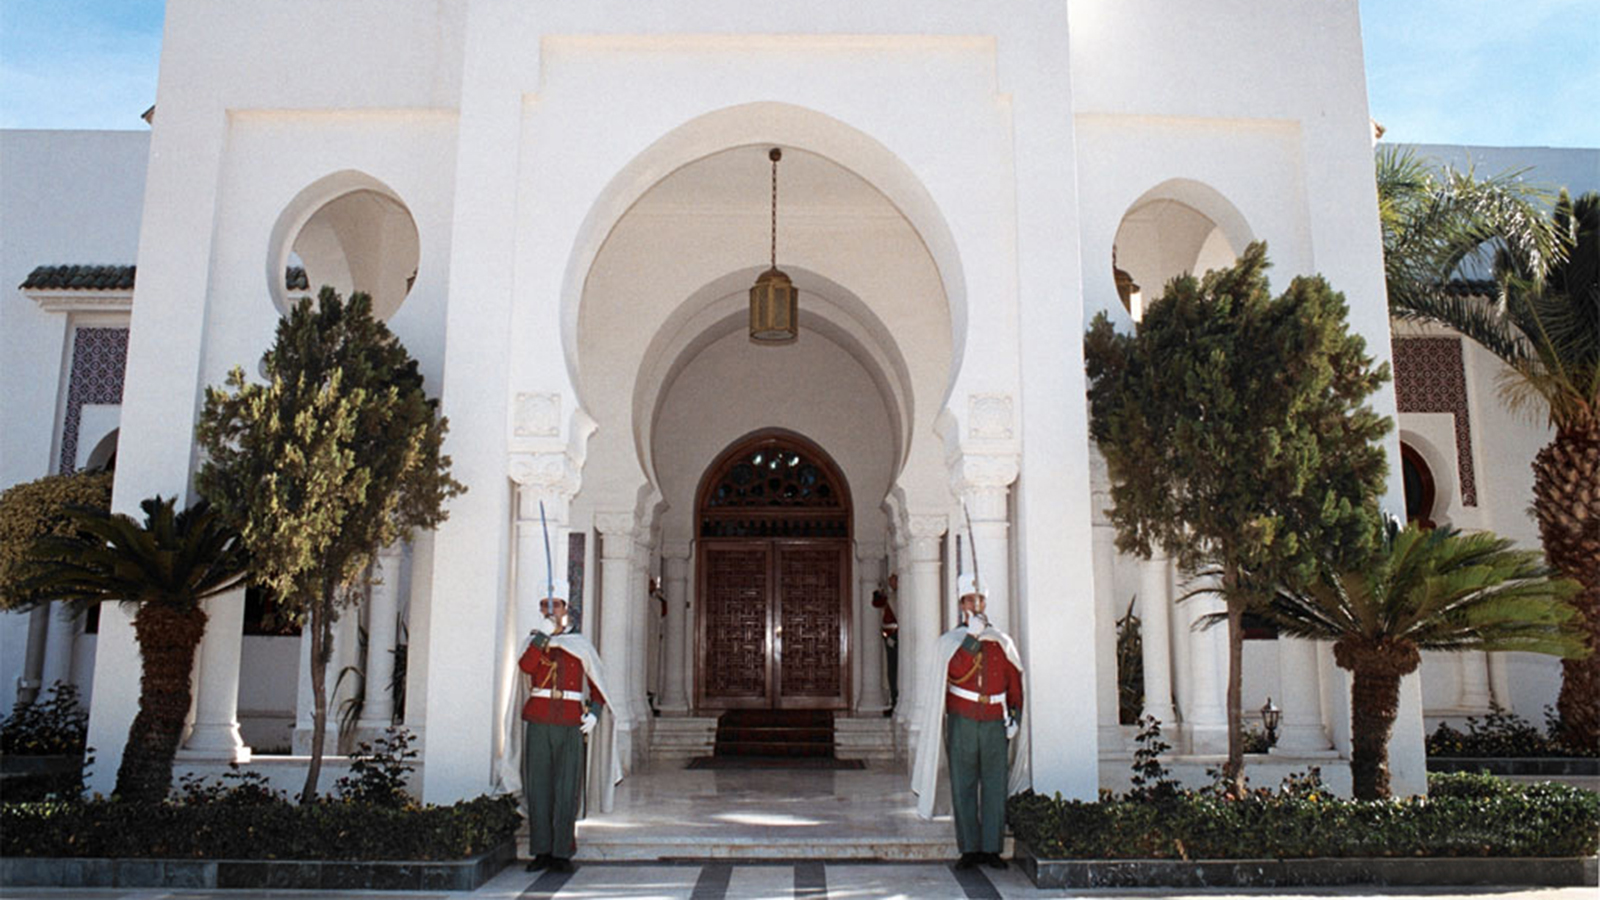 ‪خبراء ينتقدون الاحتفاظ بصلاحيات واسعة لرئيس الجمهورية في الدستور الجزائري‬ (الجزيرة)